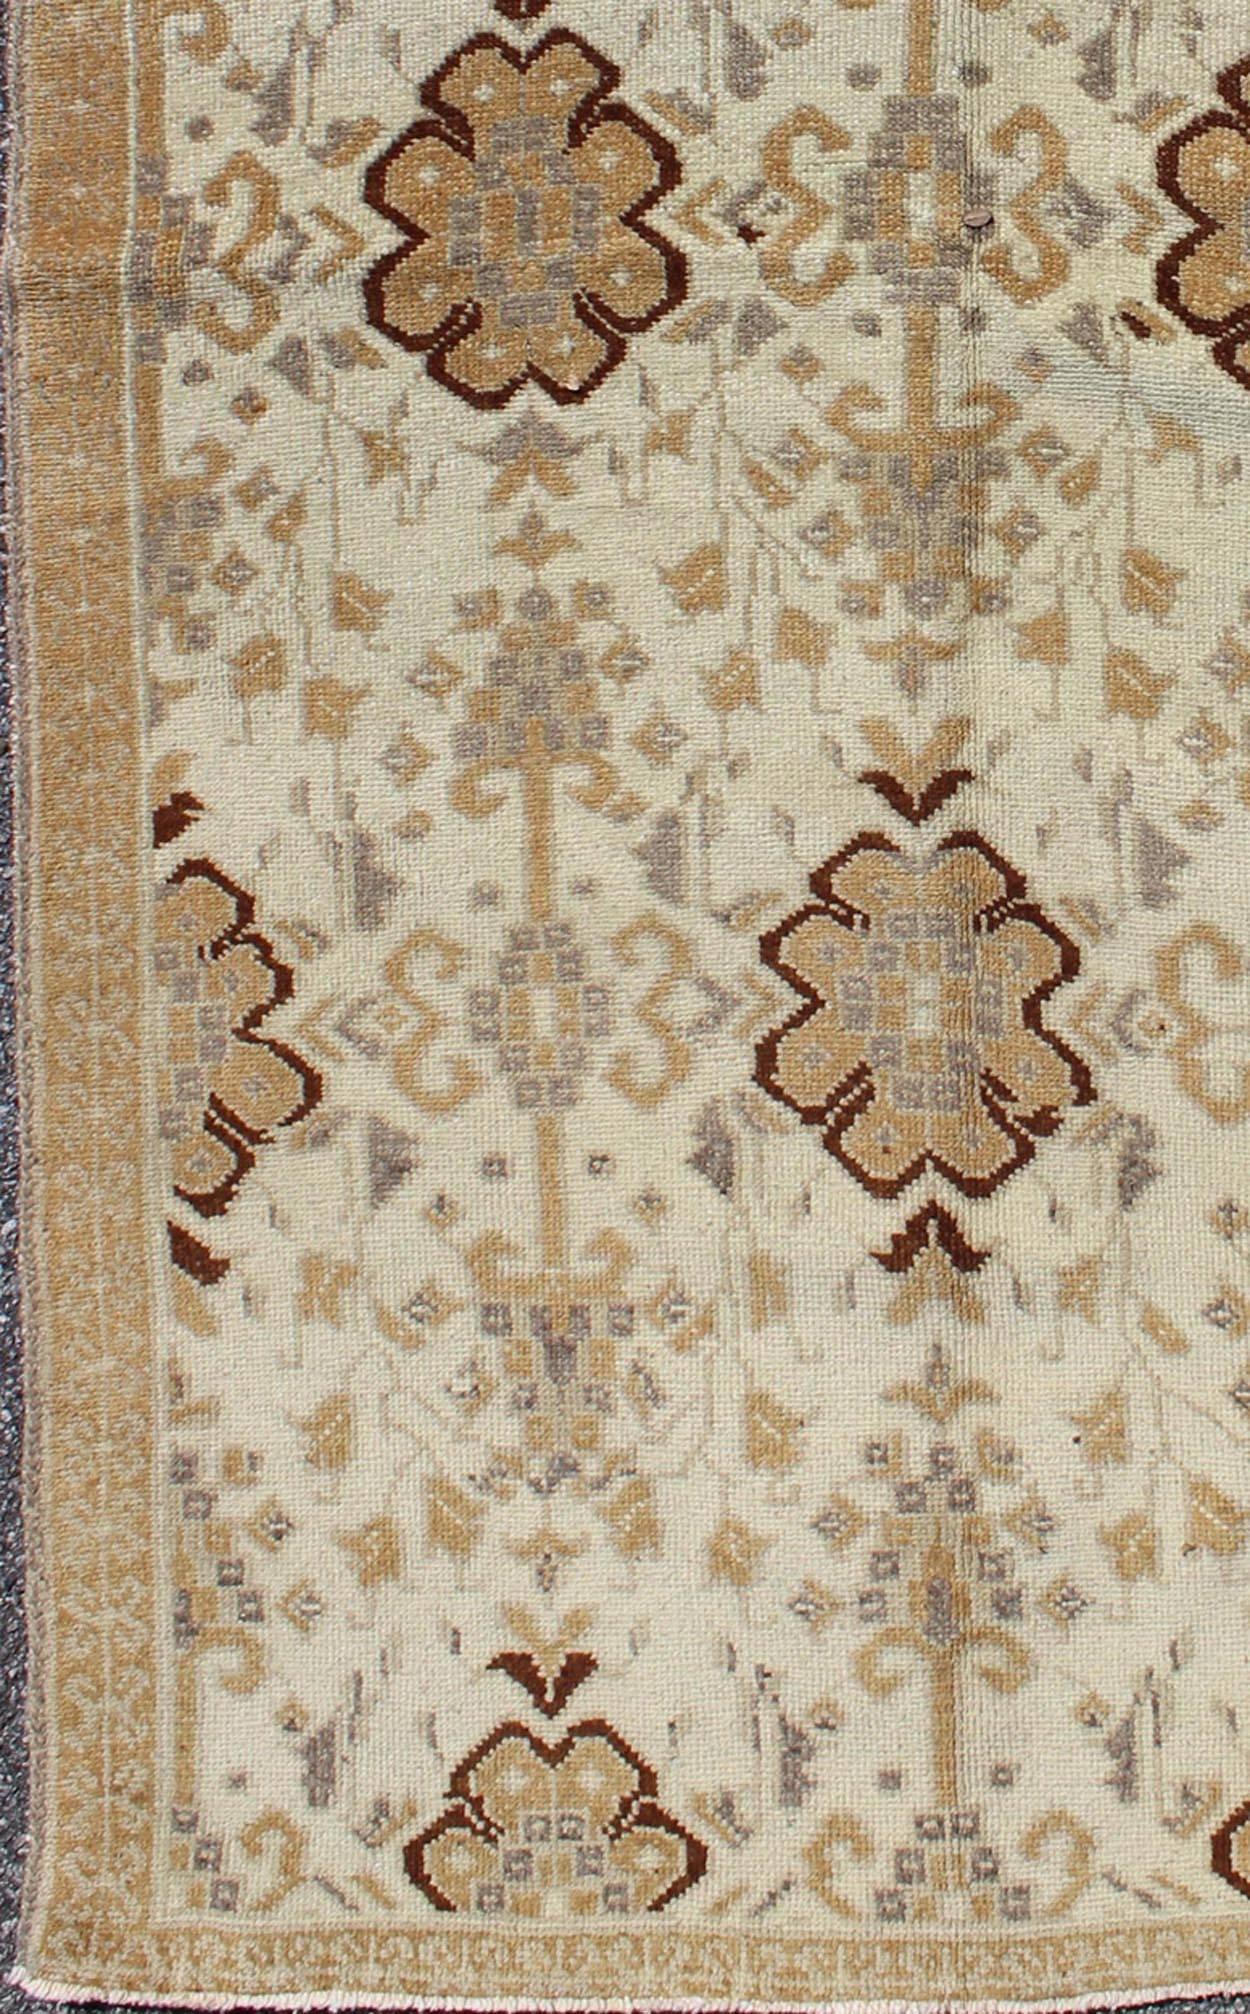 All-over vertikale florale Design Vintage türkischen Oushak Teppich in Creme, tan, grau, Teppich tu-TRS-136509, Herkunftsland Typ: Türkei Oushak, um 1940.

Dieser Oushak-Teppich (ca. Mitte des 20. Jahrhunderts) zeigt ein Allover-Muster aus